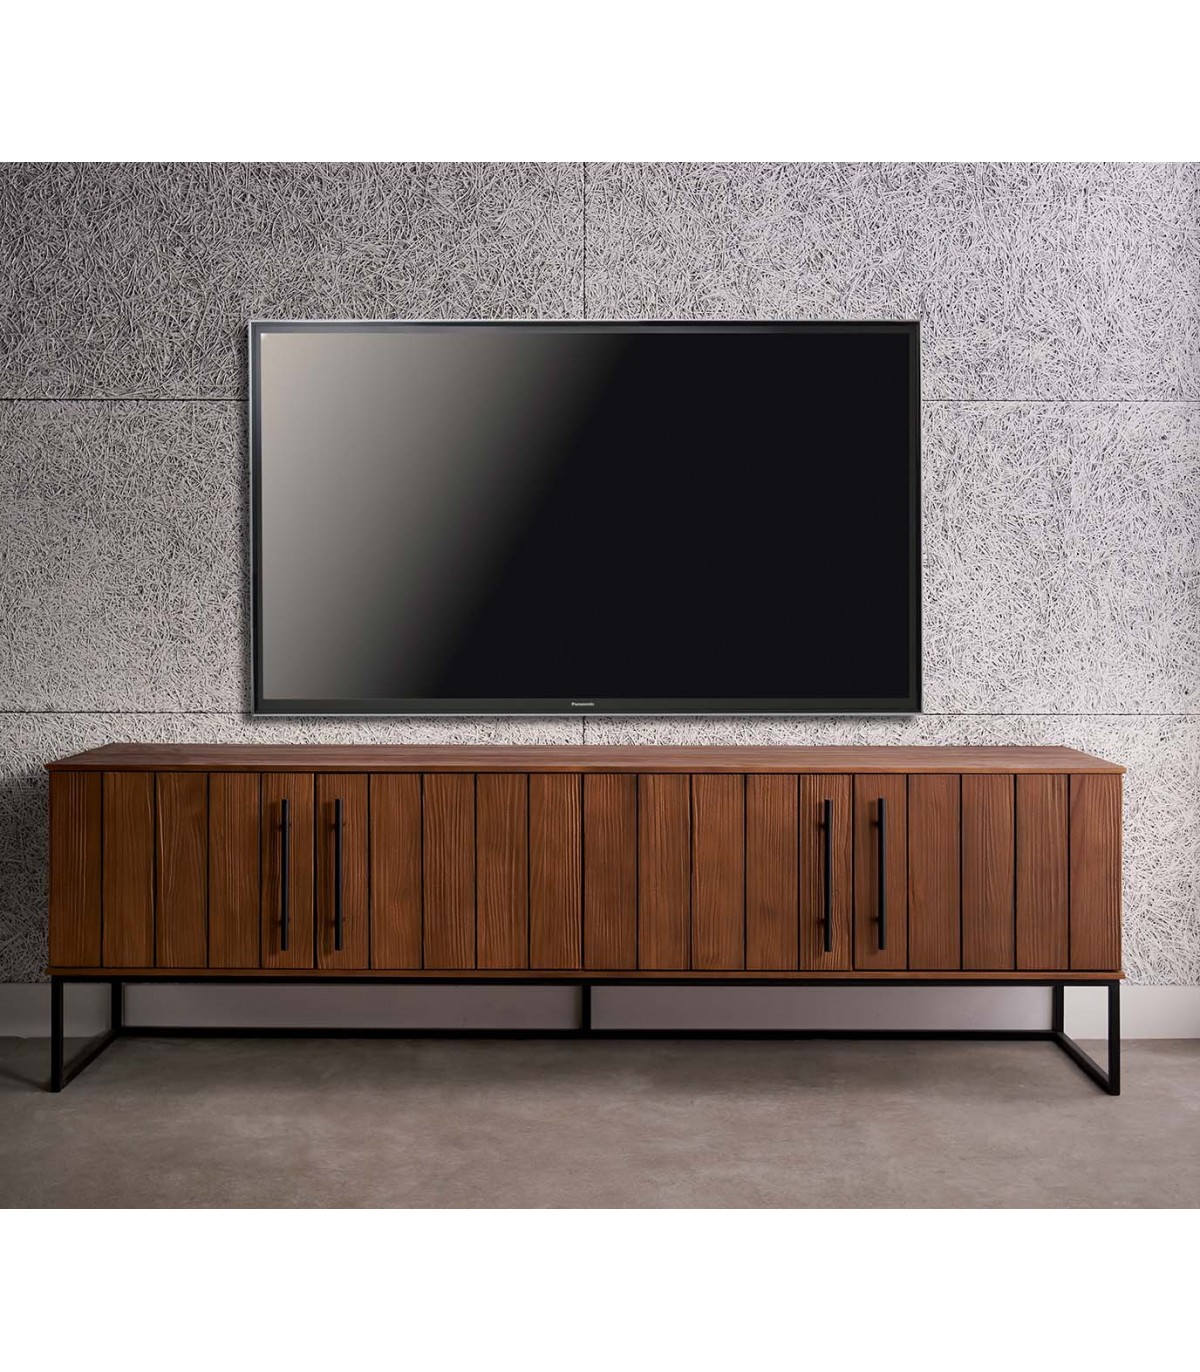 MUEBLE TV de estilo MODERNO fabricado y diseñado en madera maciza de pino